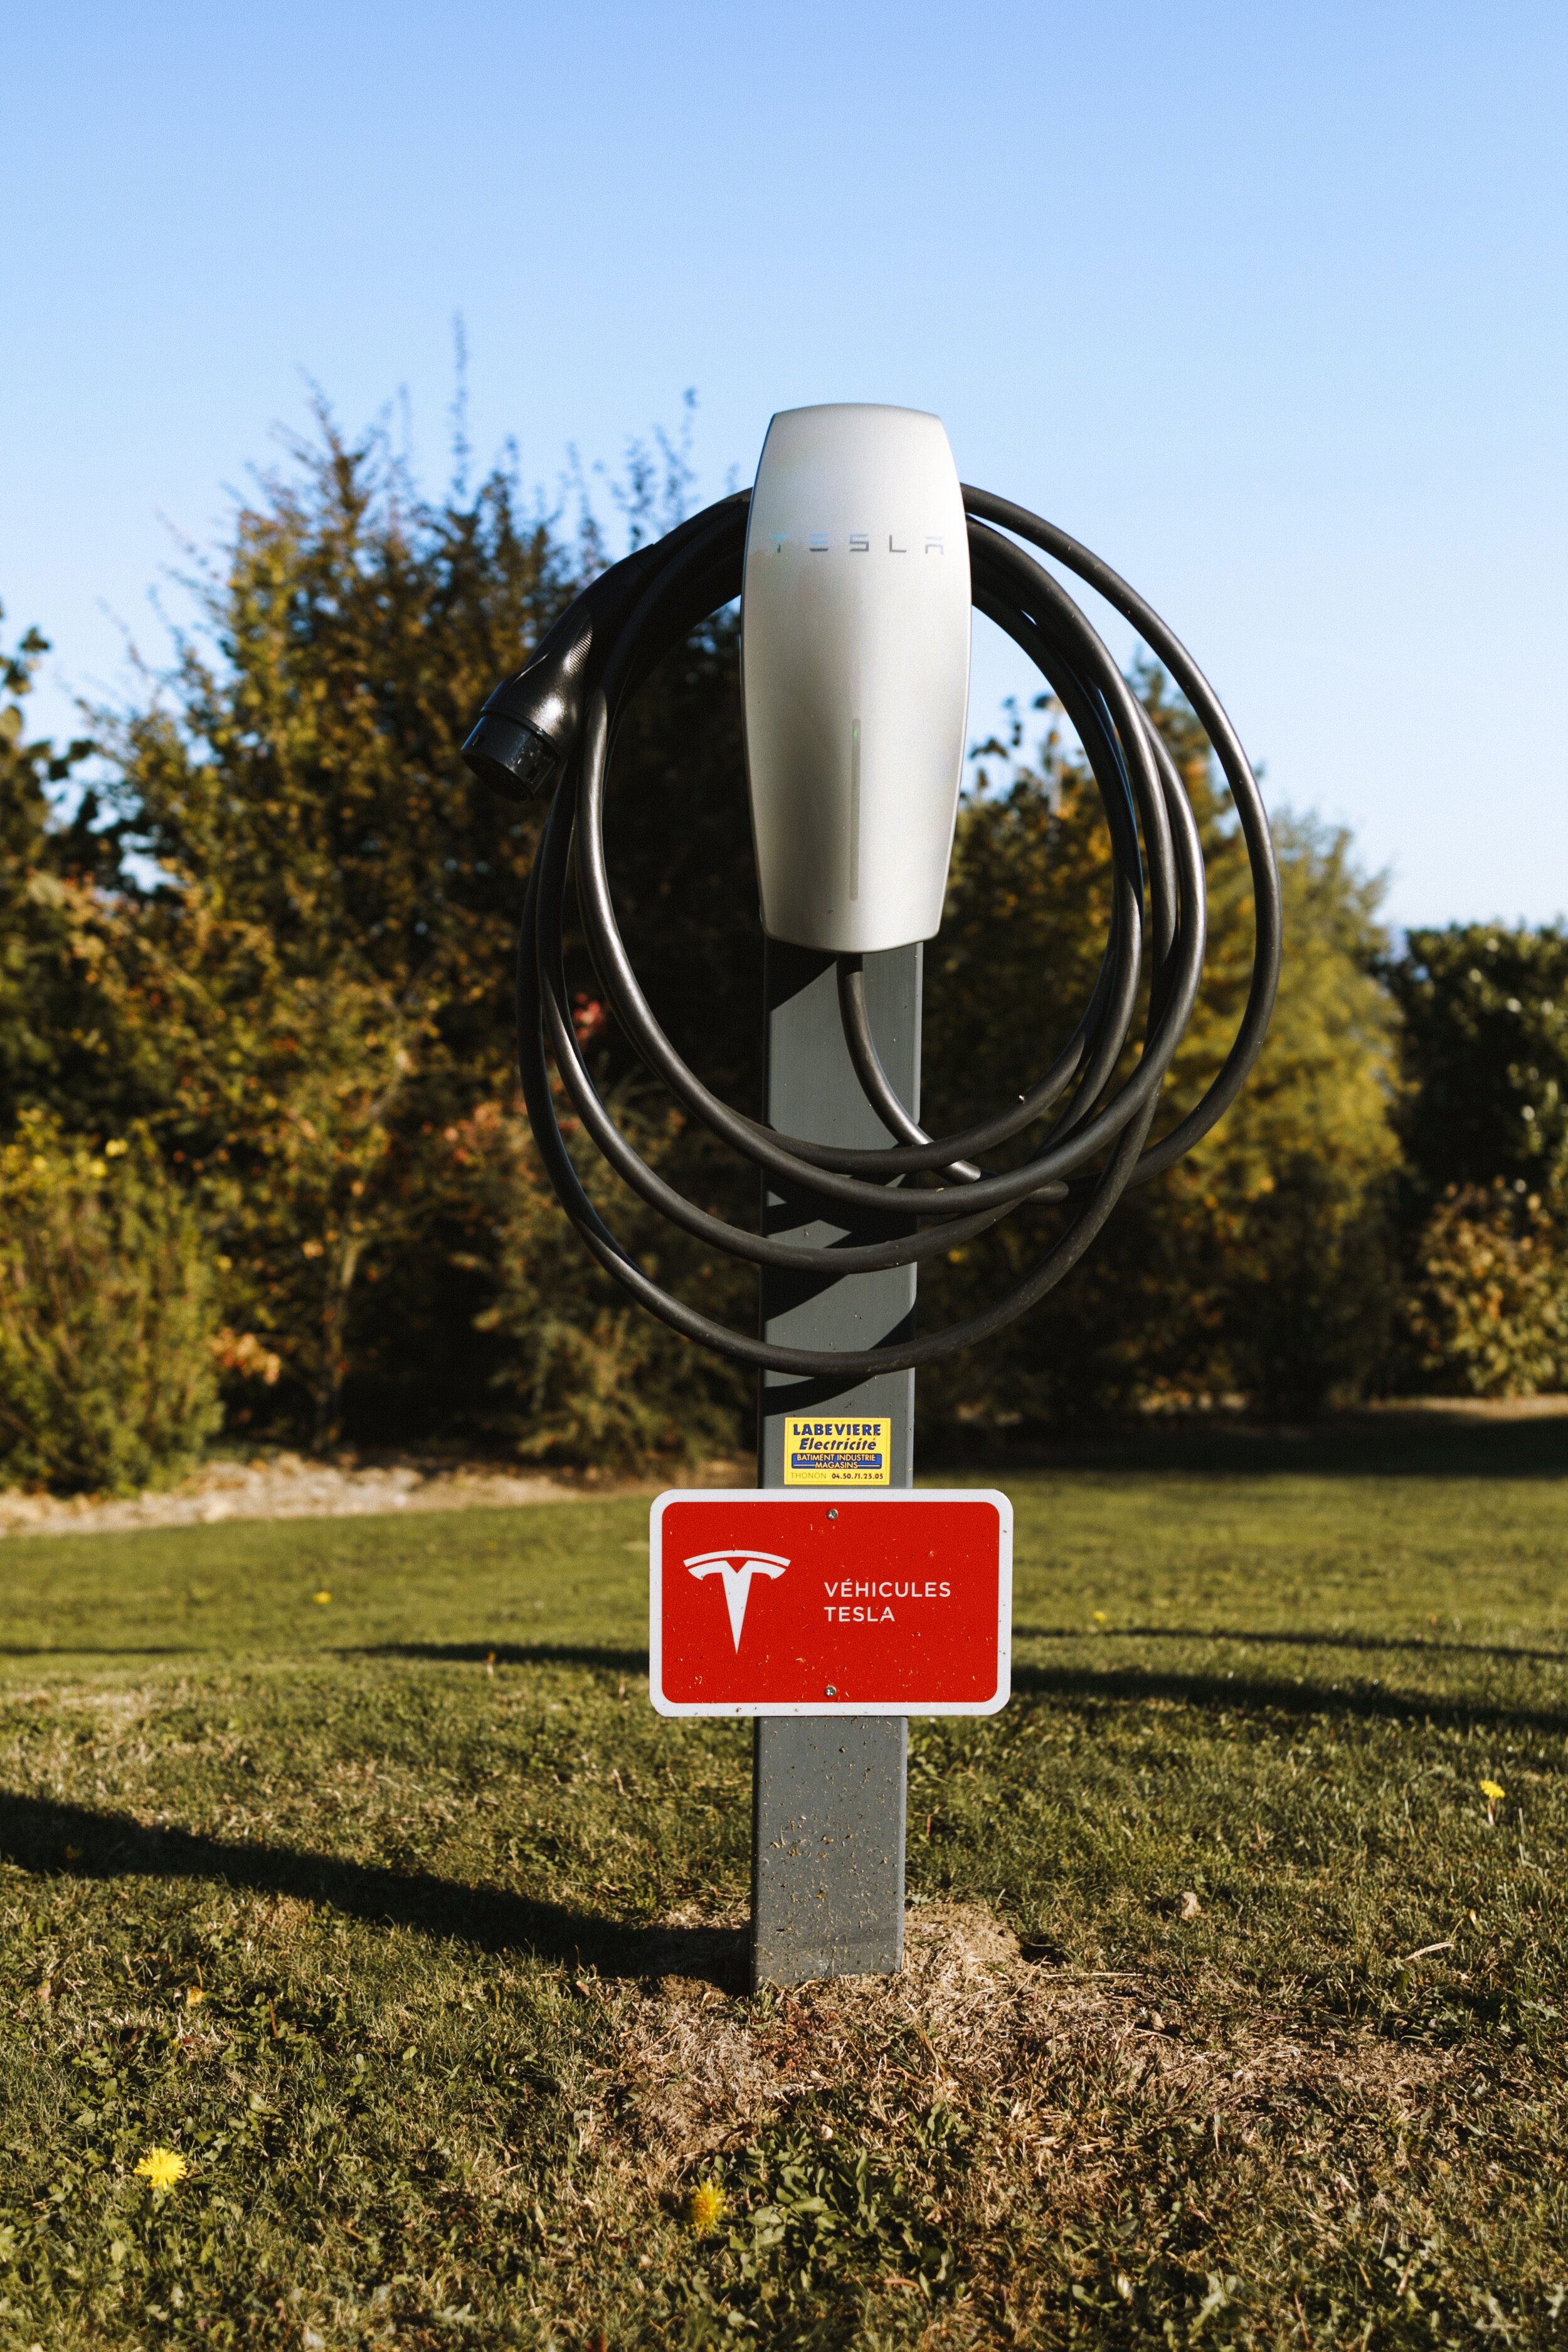 Cyberquad: Meet Tesla’s All-Electric ATV Prototype